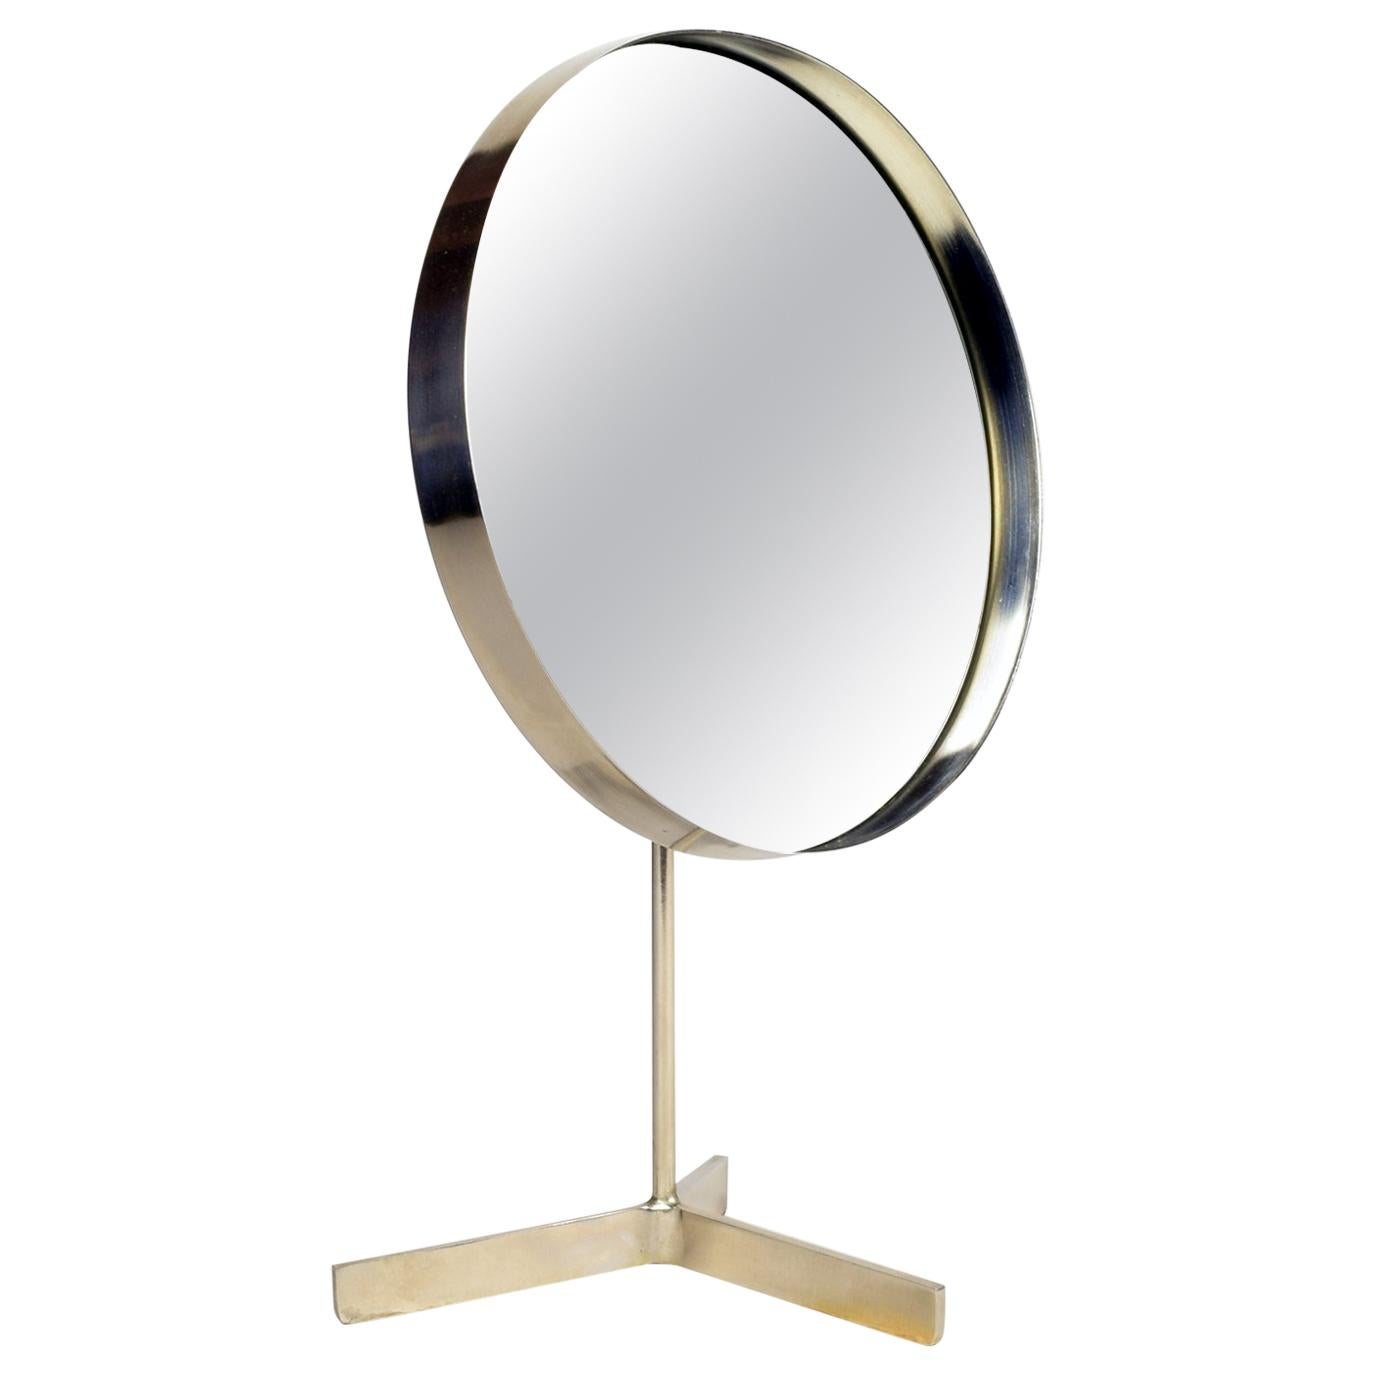 Modernist 1960s Vanity Mirror by Durlston Designs Robert Welsh Attributed